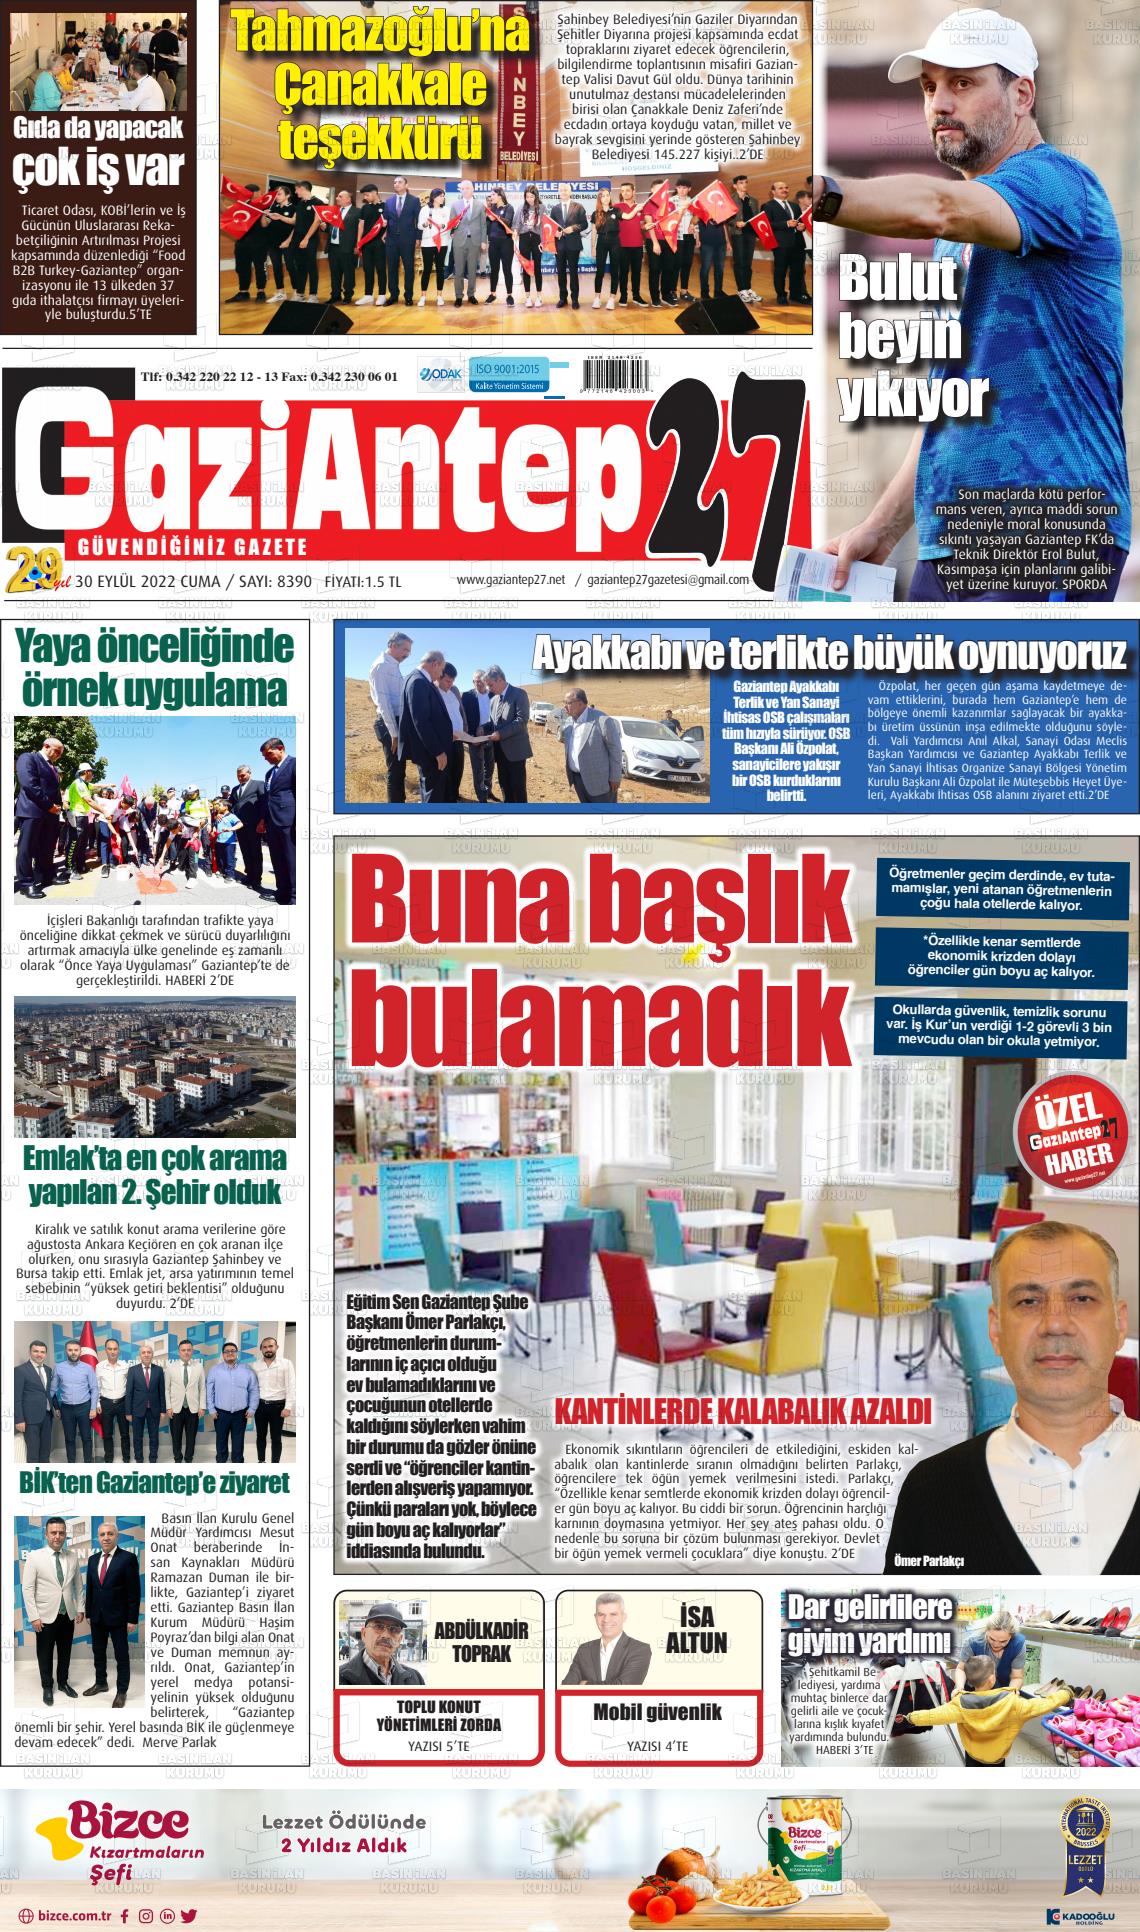 30 Eylül 2022 Gaziantep 27 Gazete Manşeti